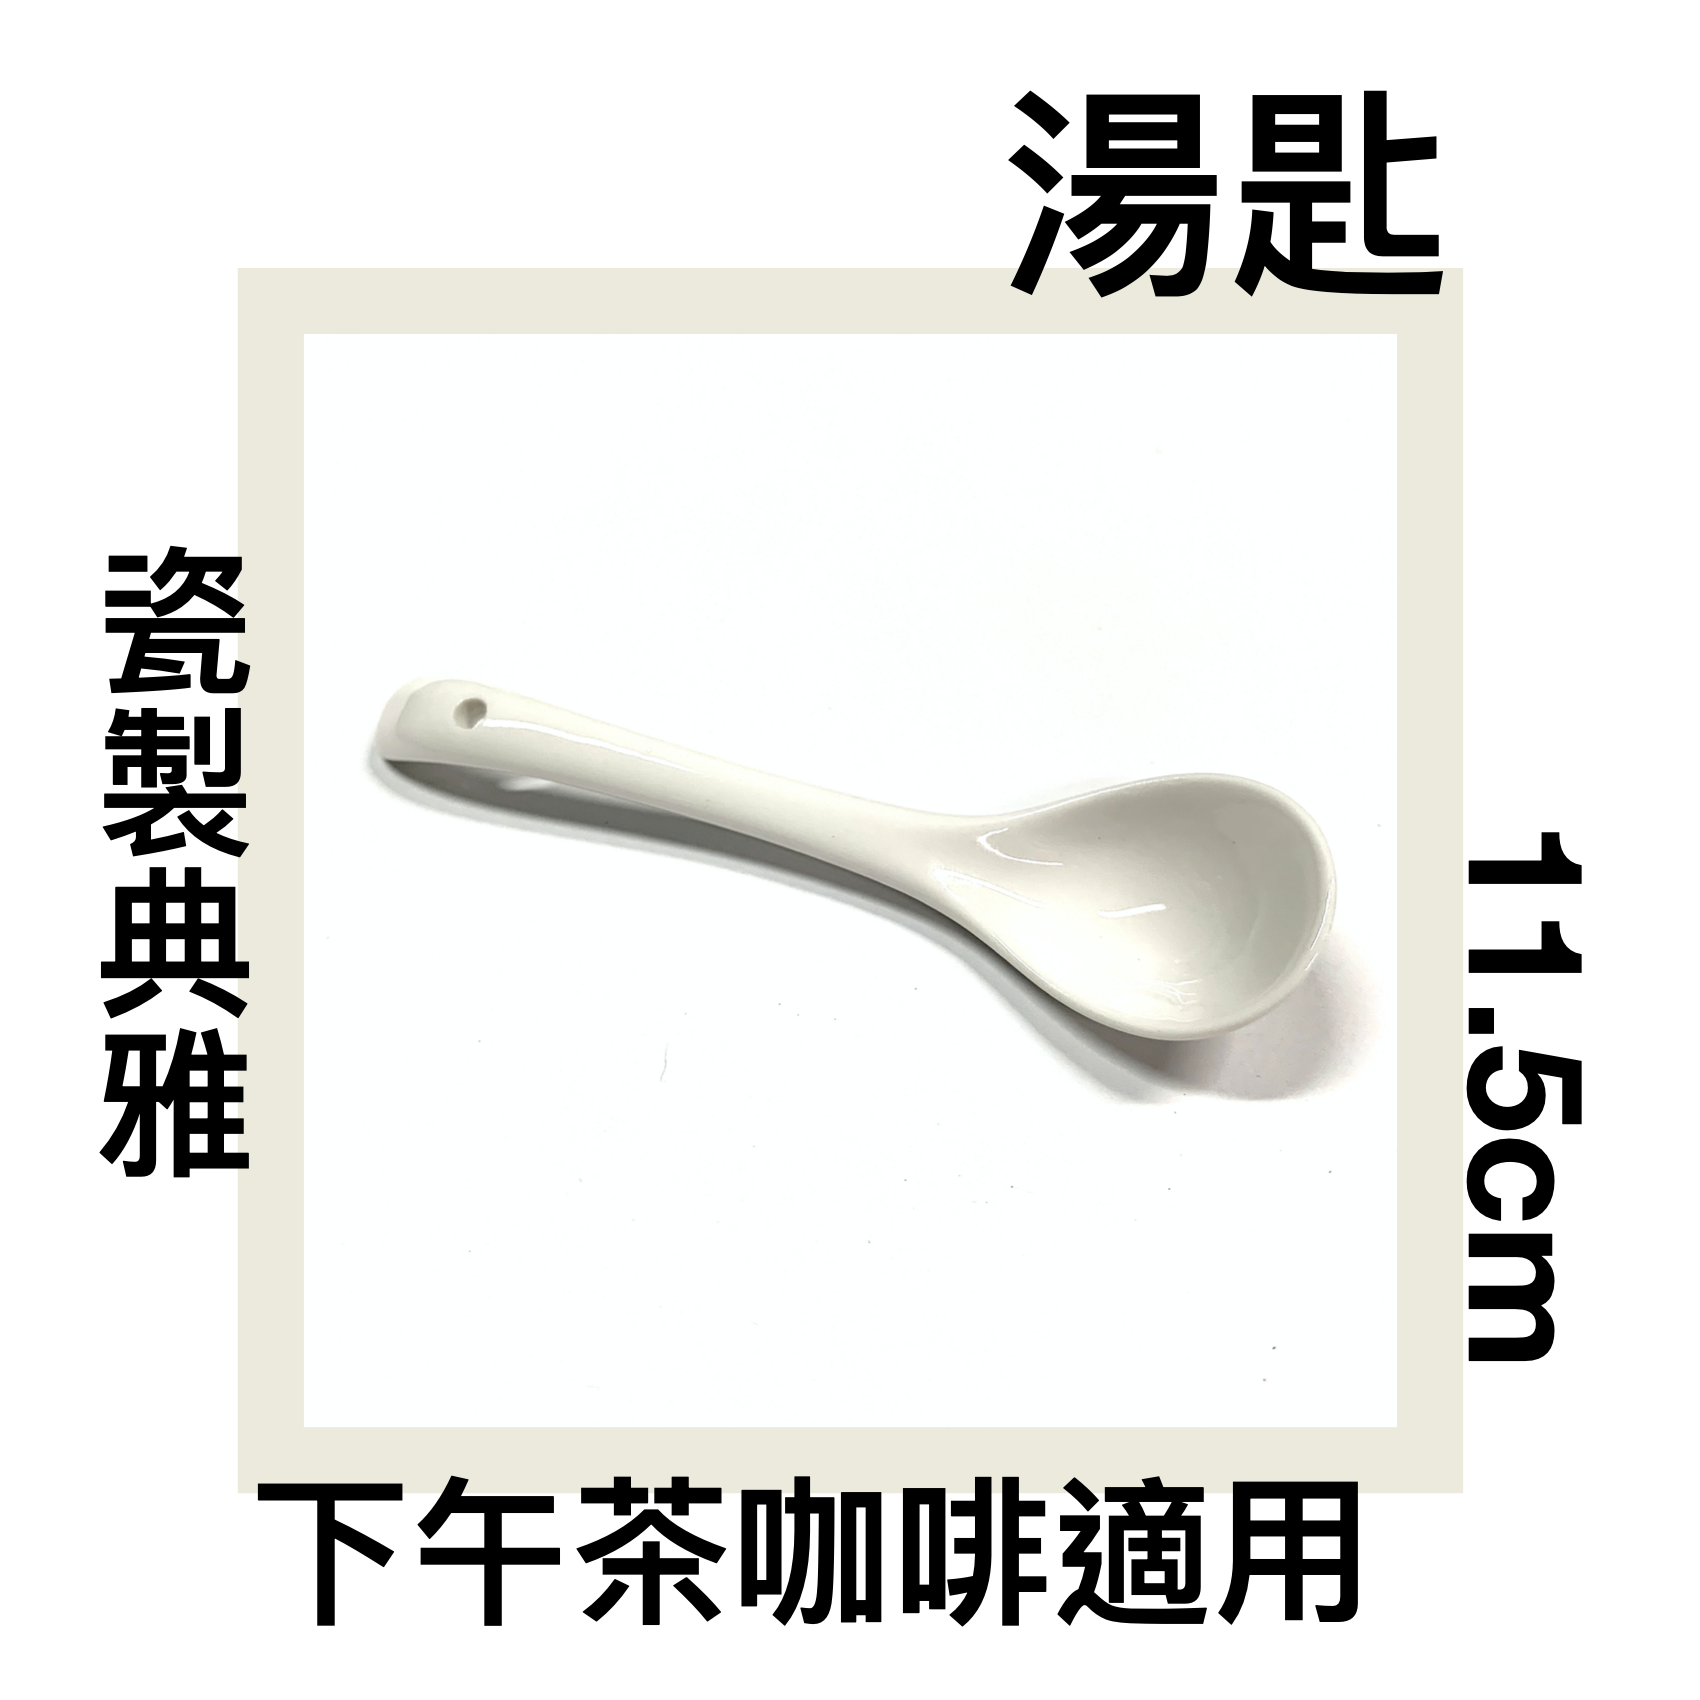 ■川鈺■ 湯匙 咖啡匙 11.5cm 小匙 瓷製小匙 咖啡勺 茶匙 *1入